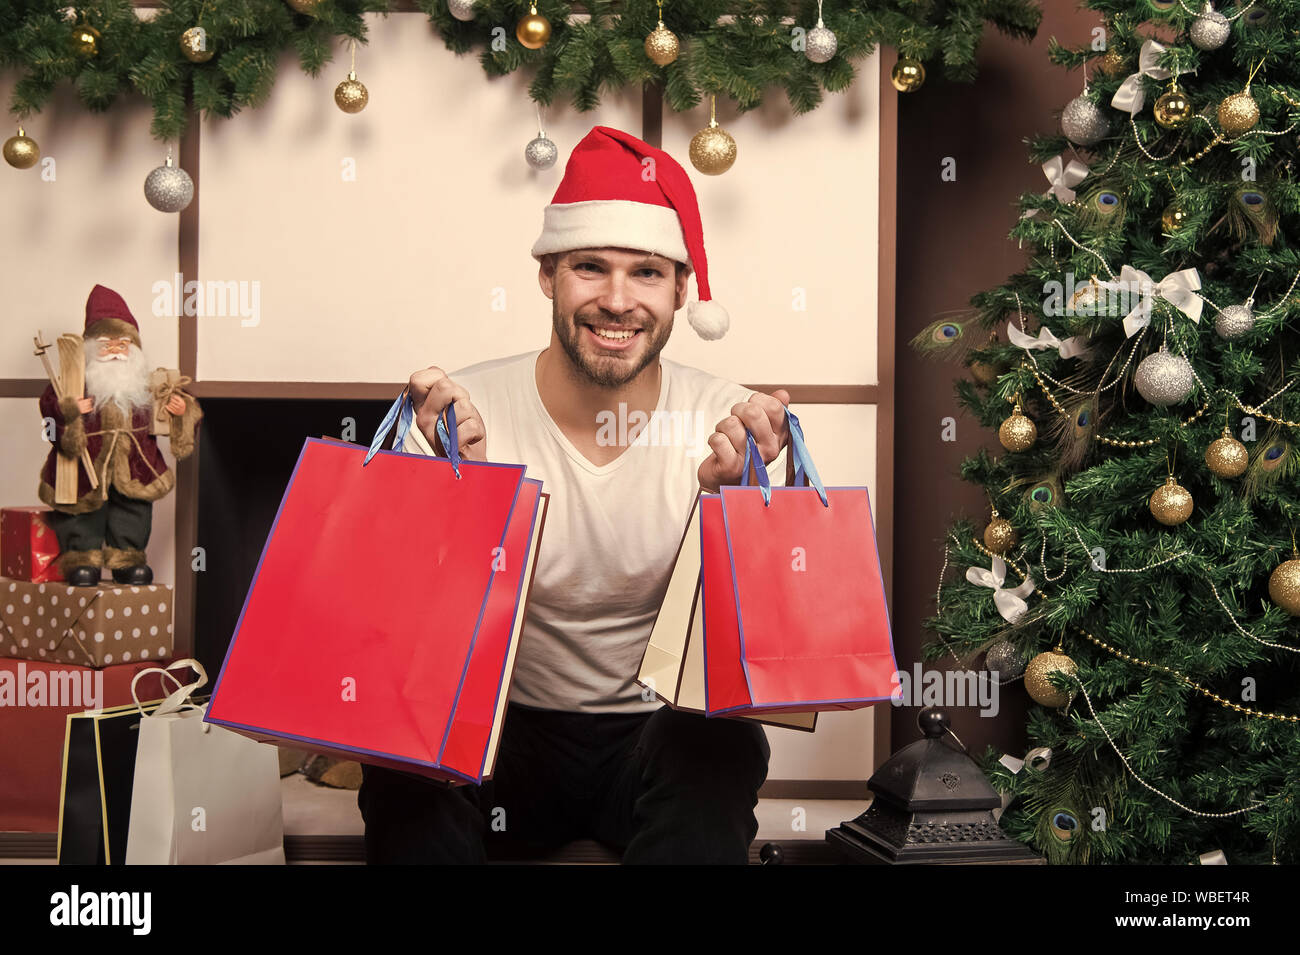 La entrega de regalos de Navidad Compras de Navidad online. Escena de año  nuevo con el árbol y los regalos. Hombre de gorro de Papá Noel para  celebrar la Navidad. La mañana